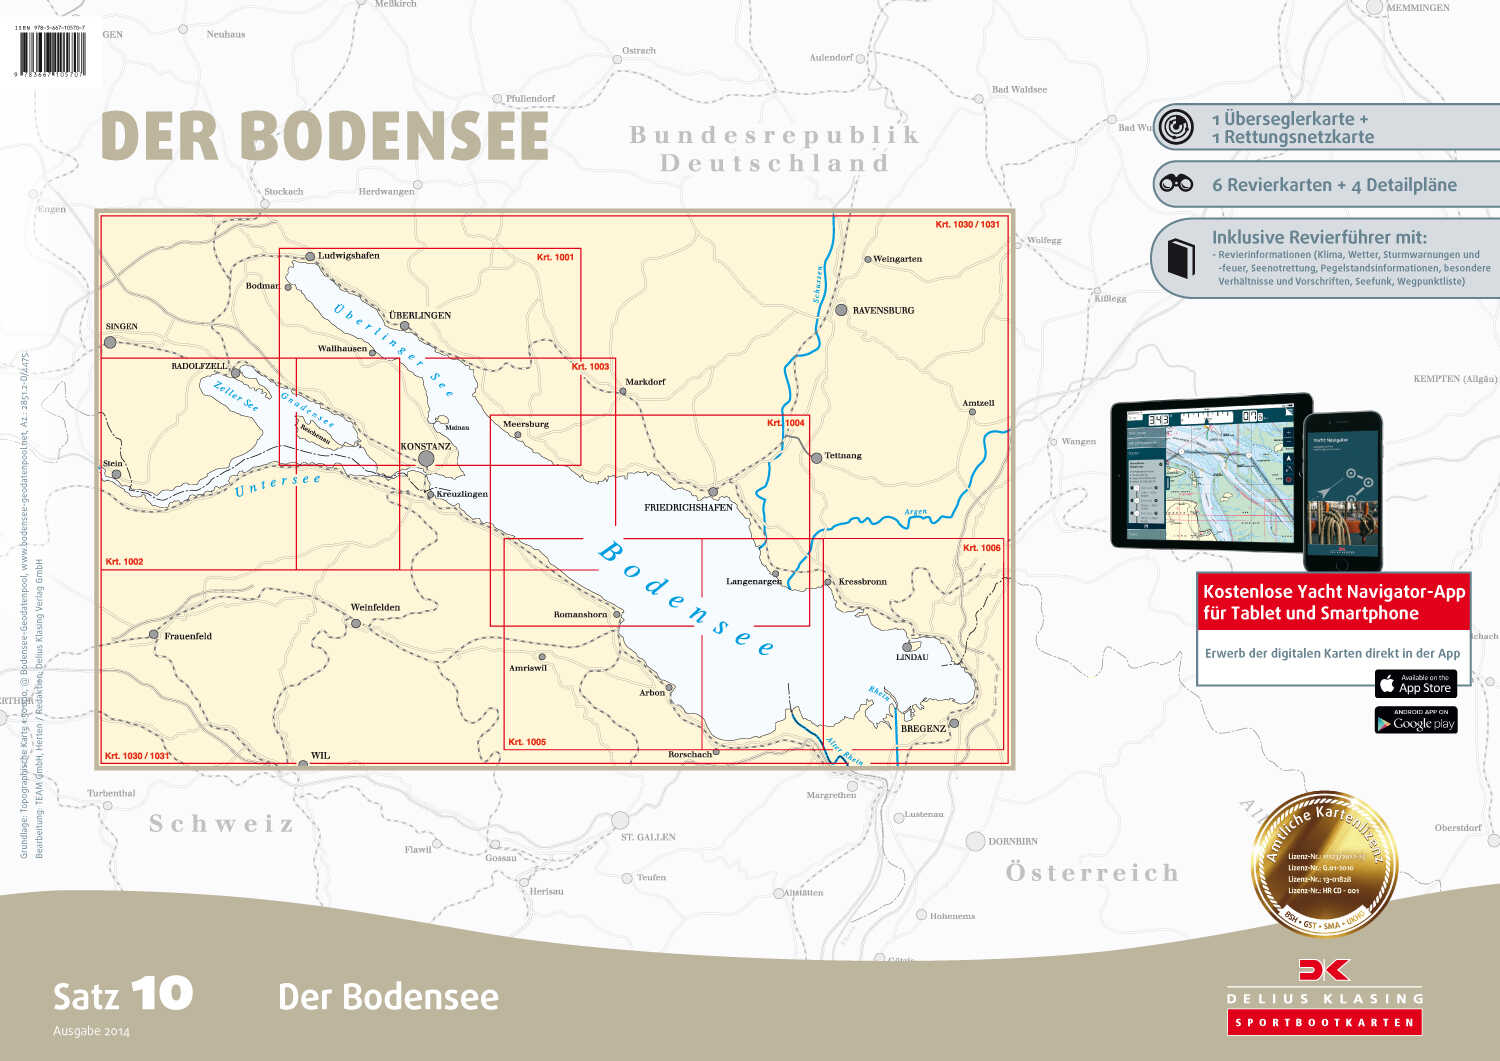 Delius Klasing Sportbootkarten Satz 10: Der Bodensee